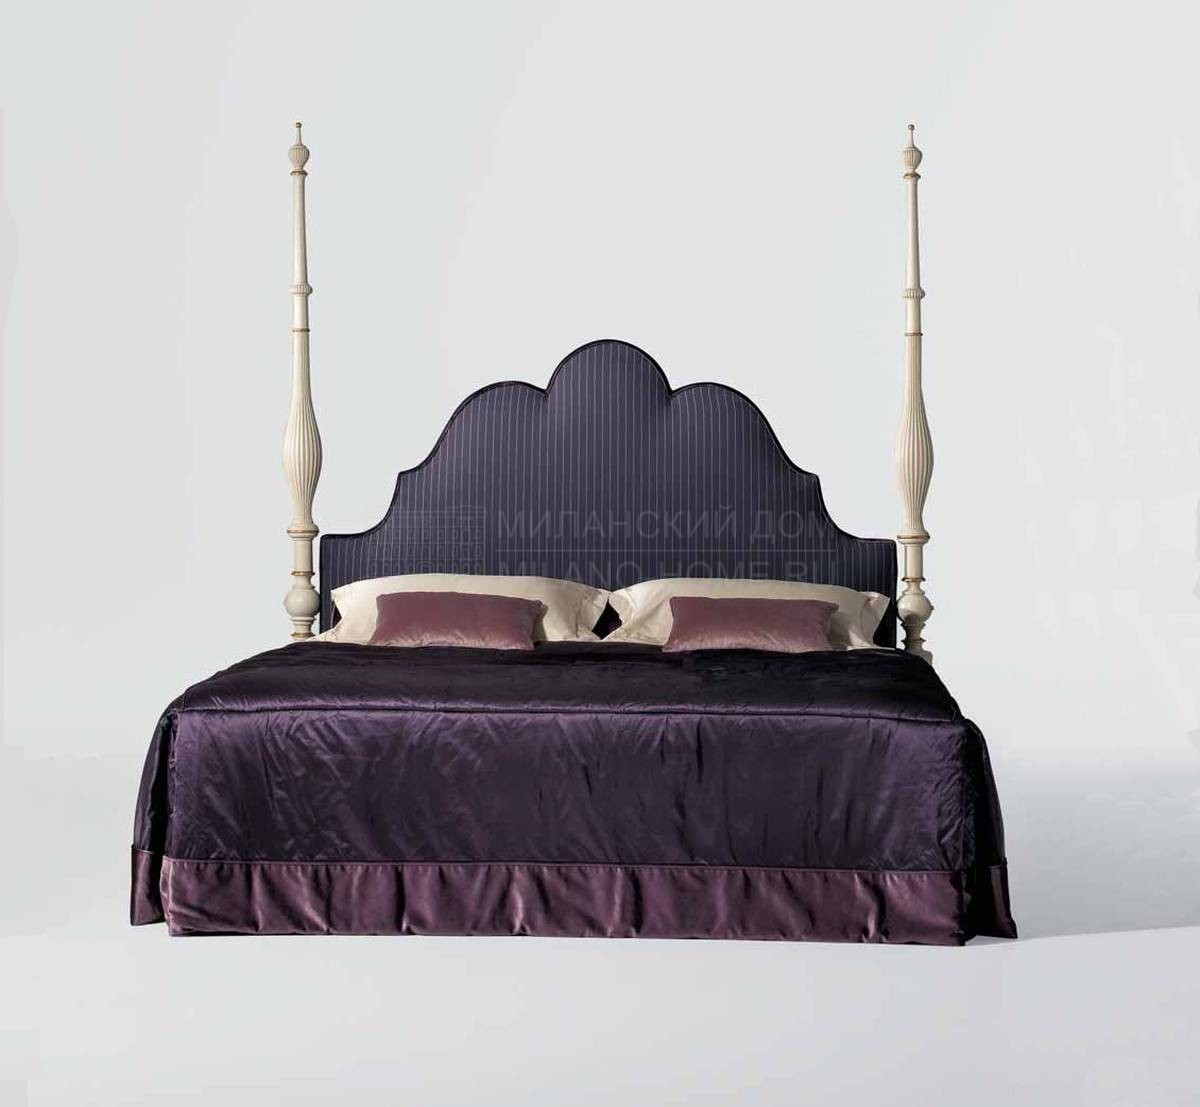 Кровать с балдахином Oak Library art.MG 6412 из Италии фабрики OAK